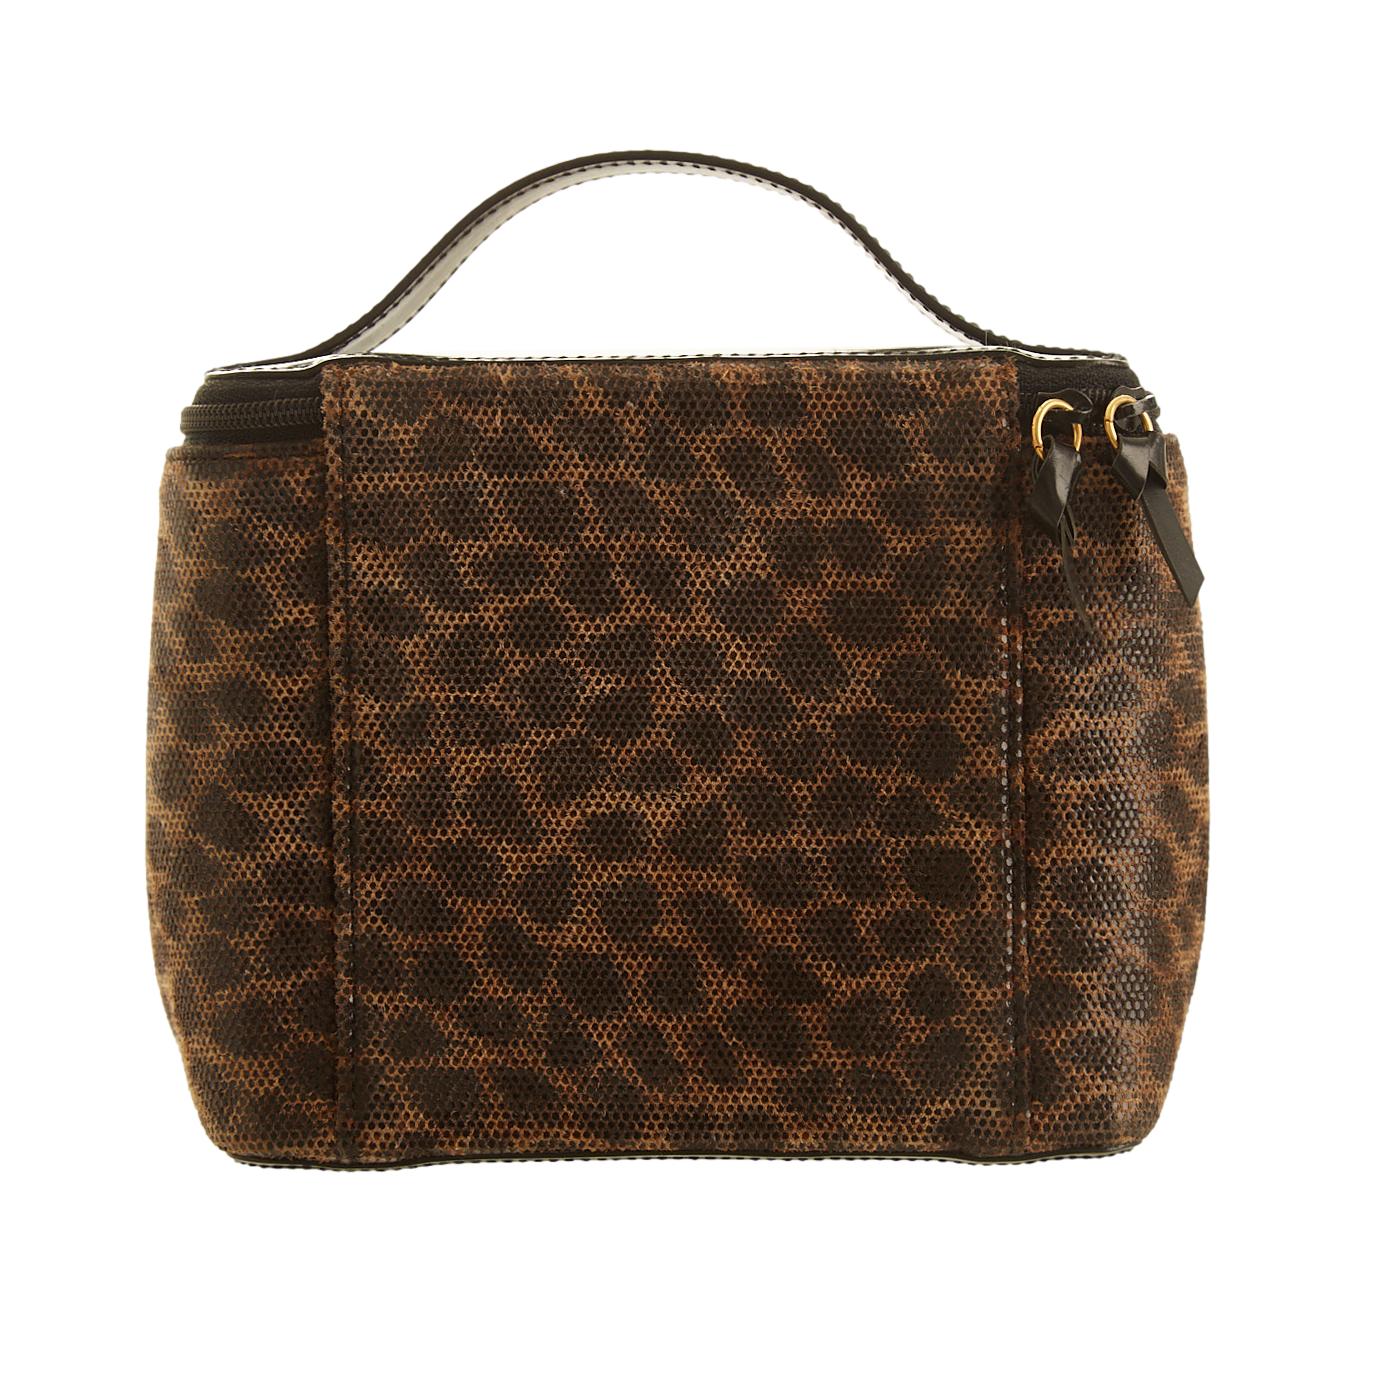 Loewe Cheetah Print Mini Top Handle Bag